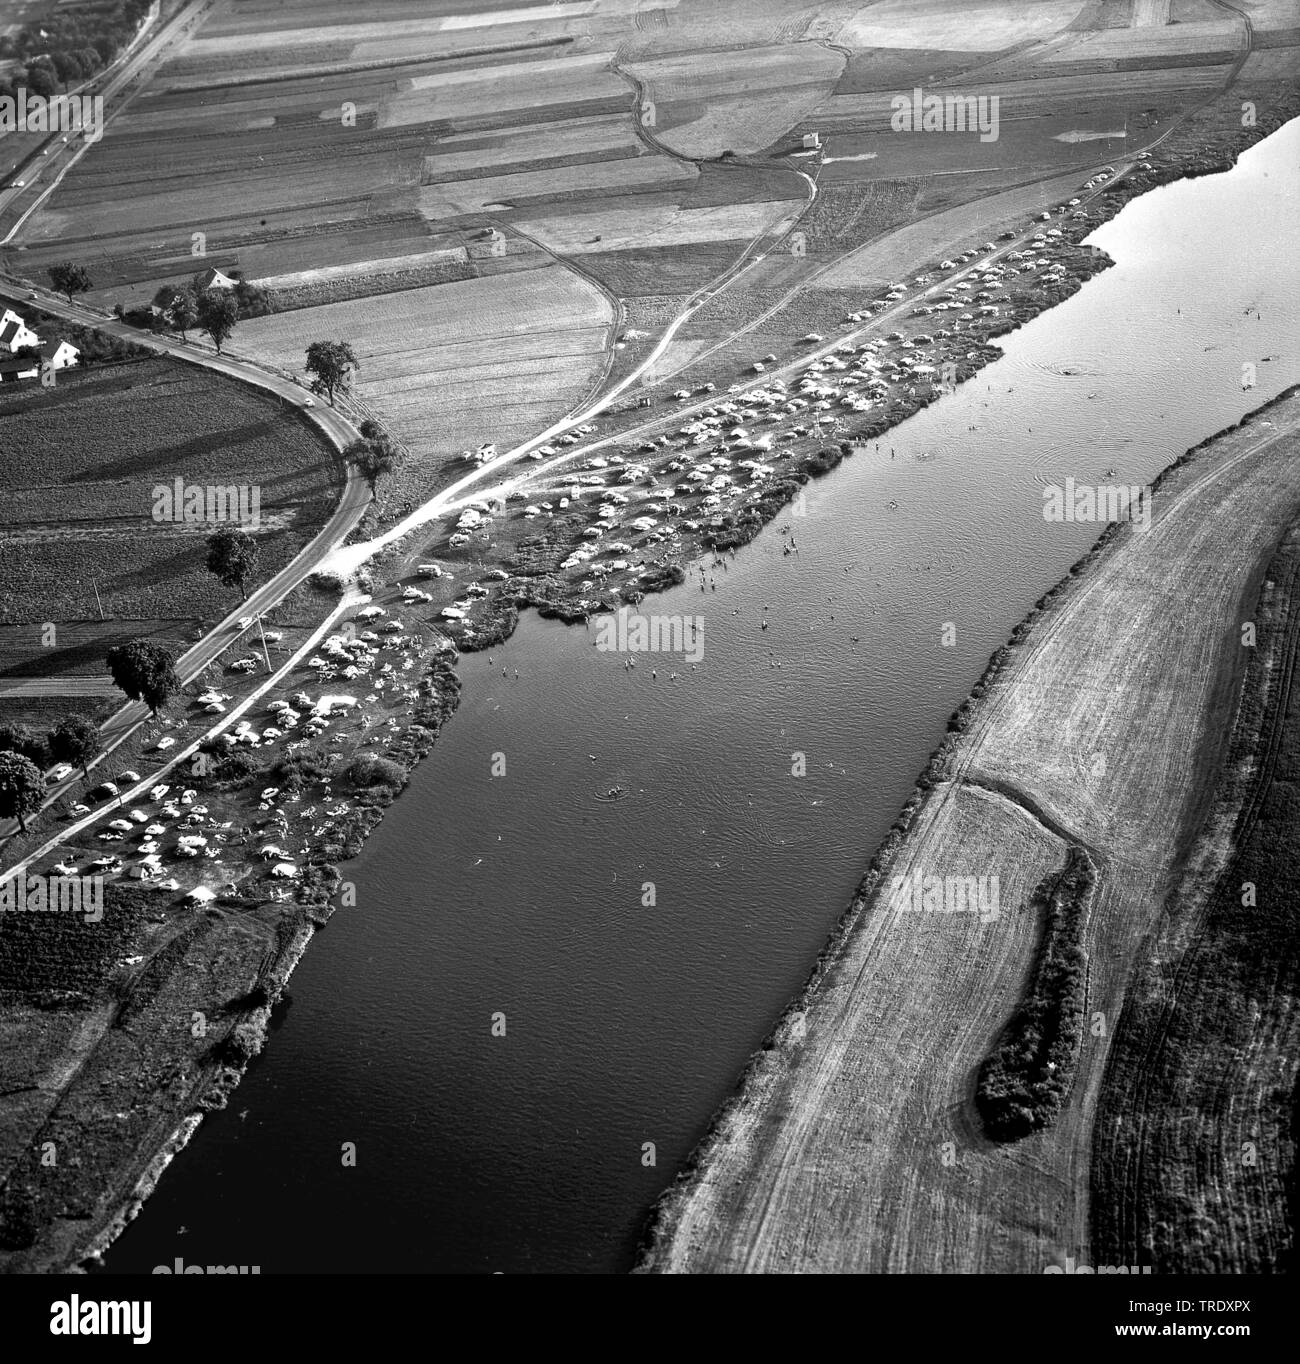 Personen Baden im Fluss Regen nördlich von Regensburg, Luftbild aus 02.09.1961, Deutschland, Bayern, Regensburg Stockfoto